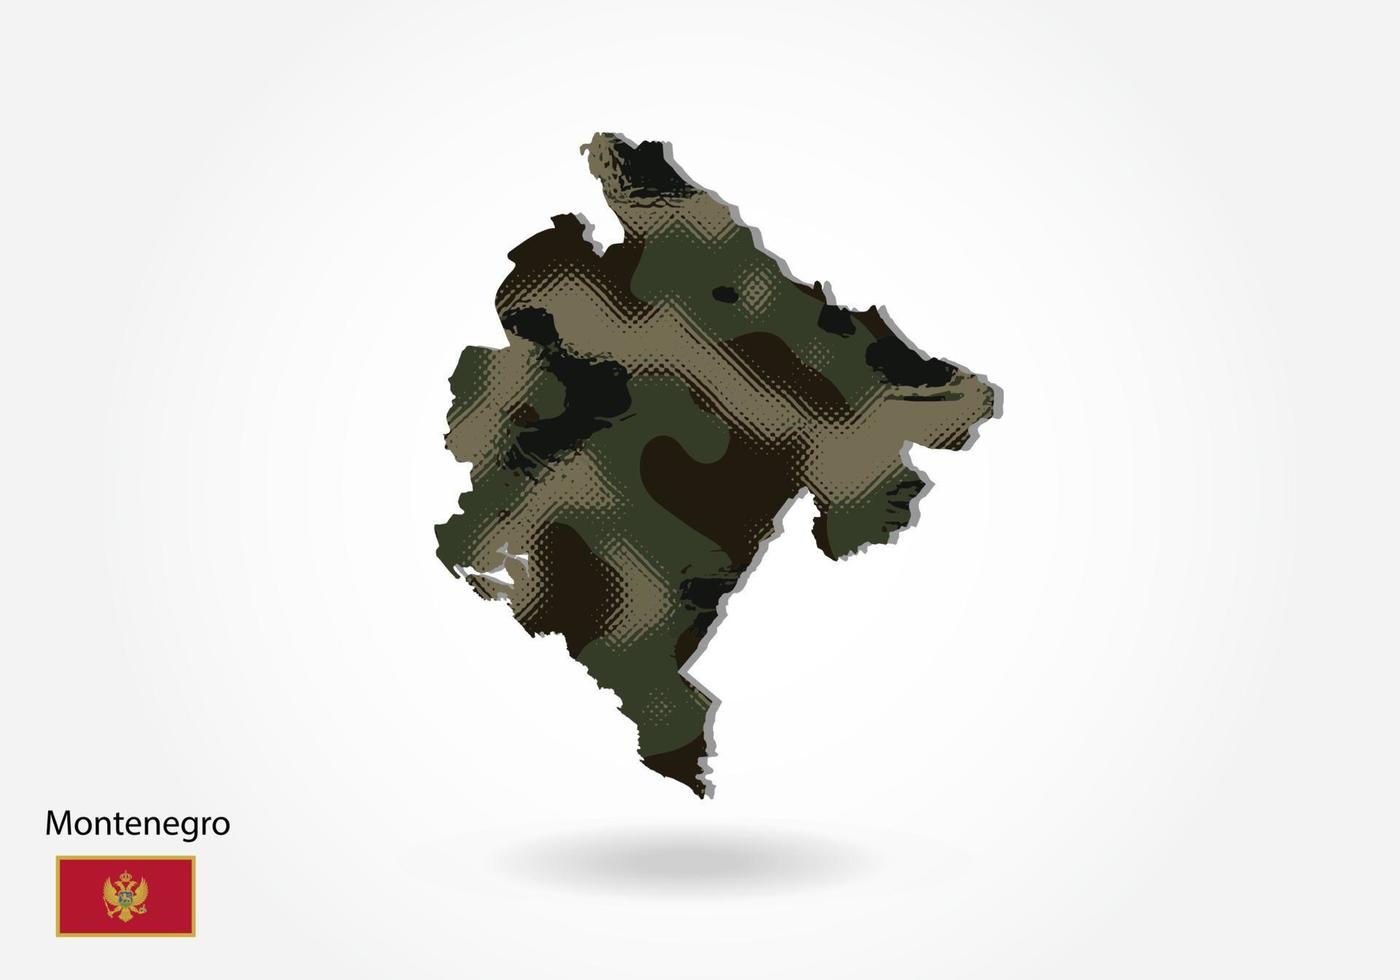 Montenegro kaart met camouflagepatroon, bos - groene textuur in kaart. militair concept voor leger, soldaat en oorlog. wapenschild, vlag. vector